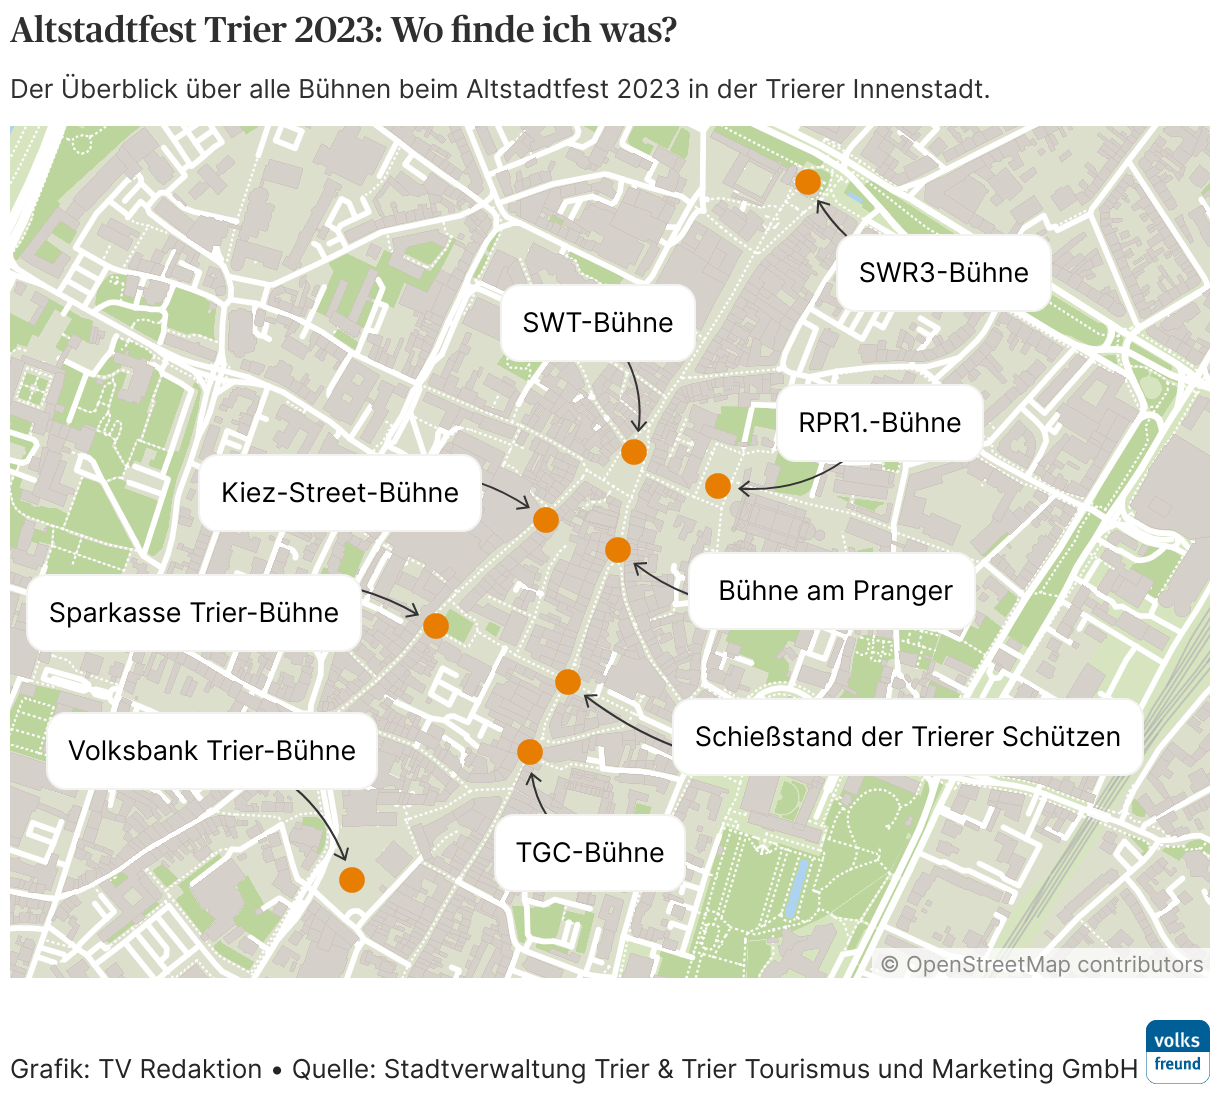 Der Überblick über alle Bühnen beim Altstadtfest 2023 in der Trierer Innenstadt.